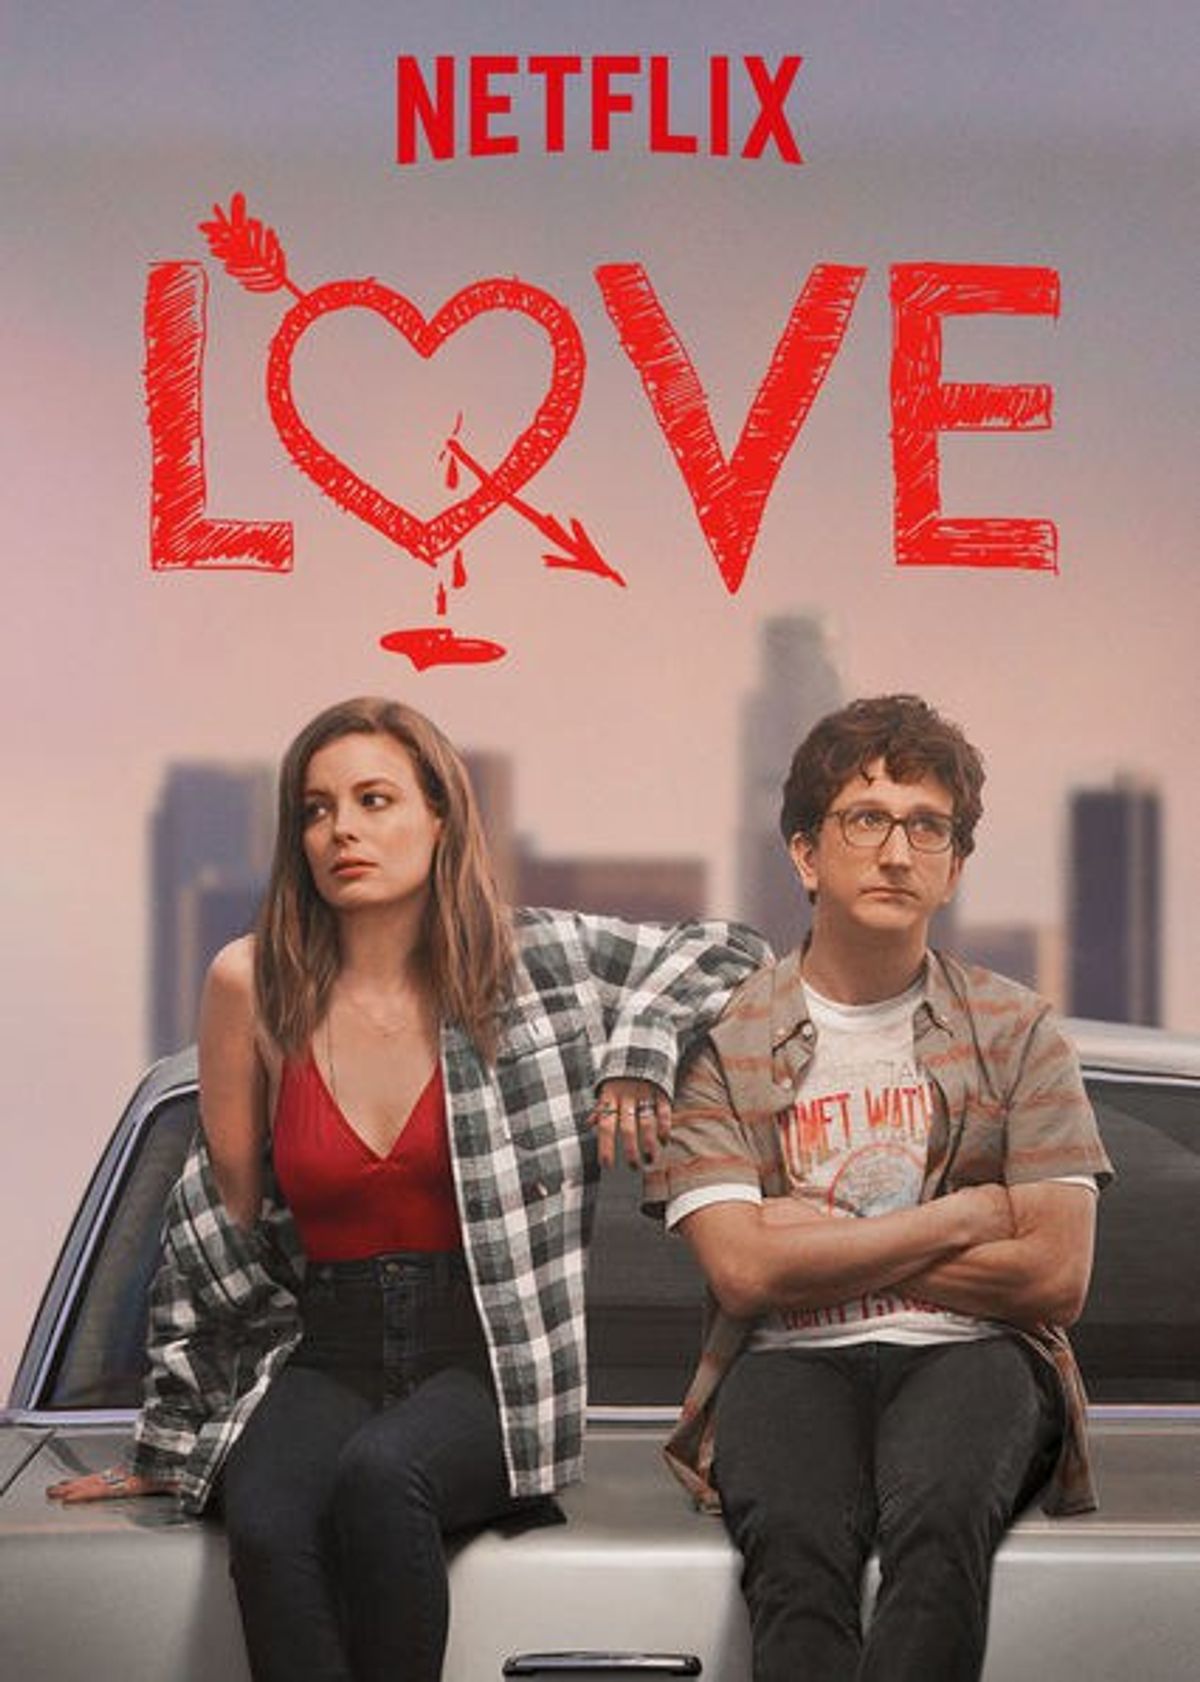 Netflix Original 'Love' Is Worth The Watch